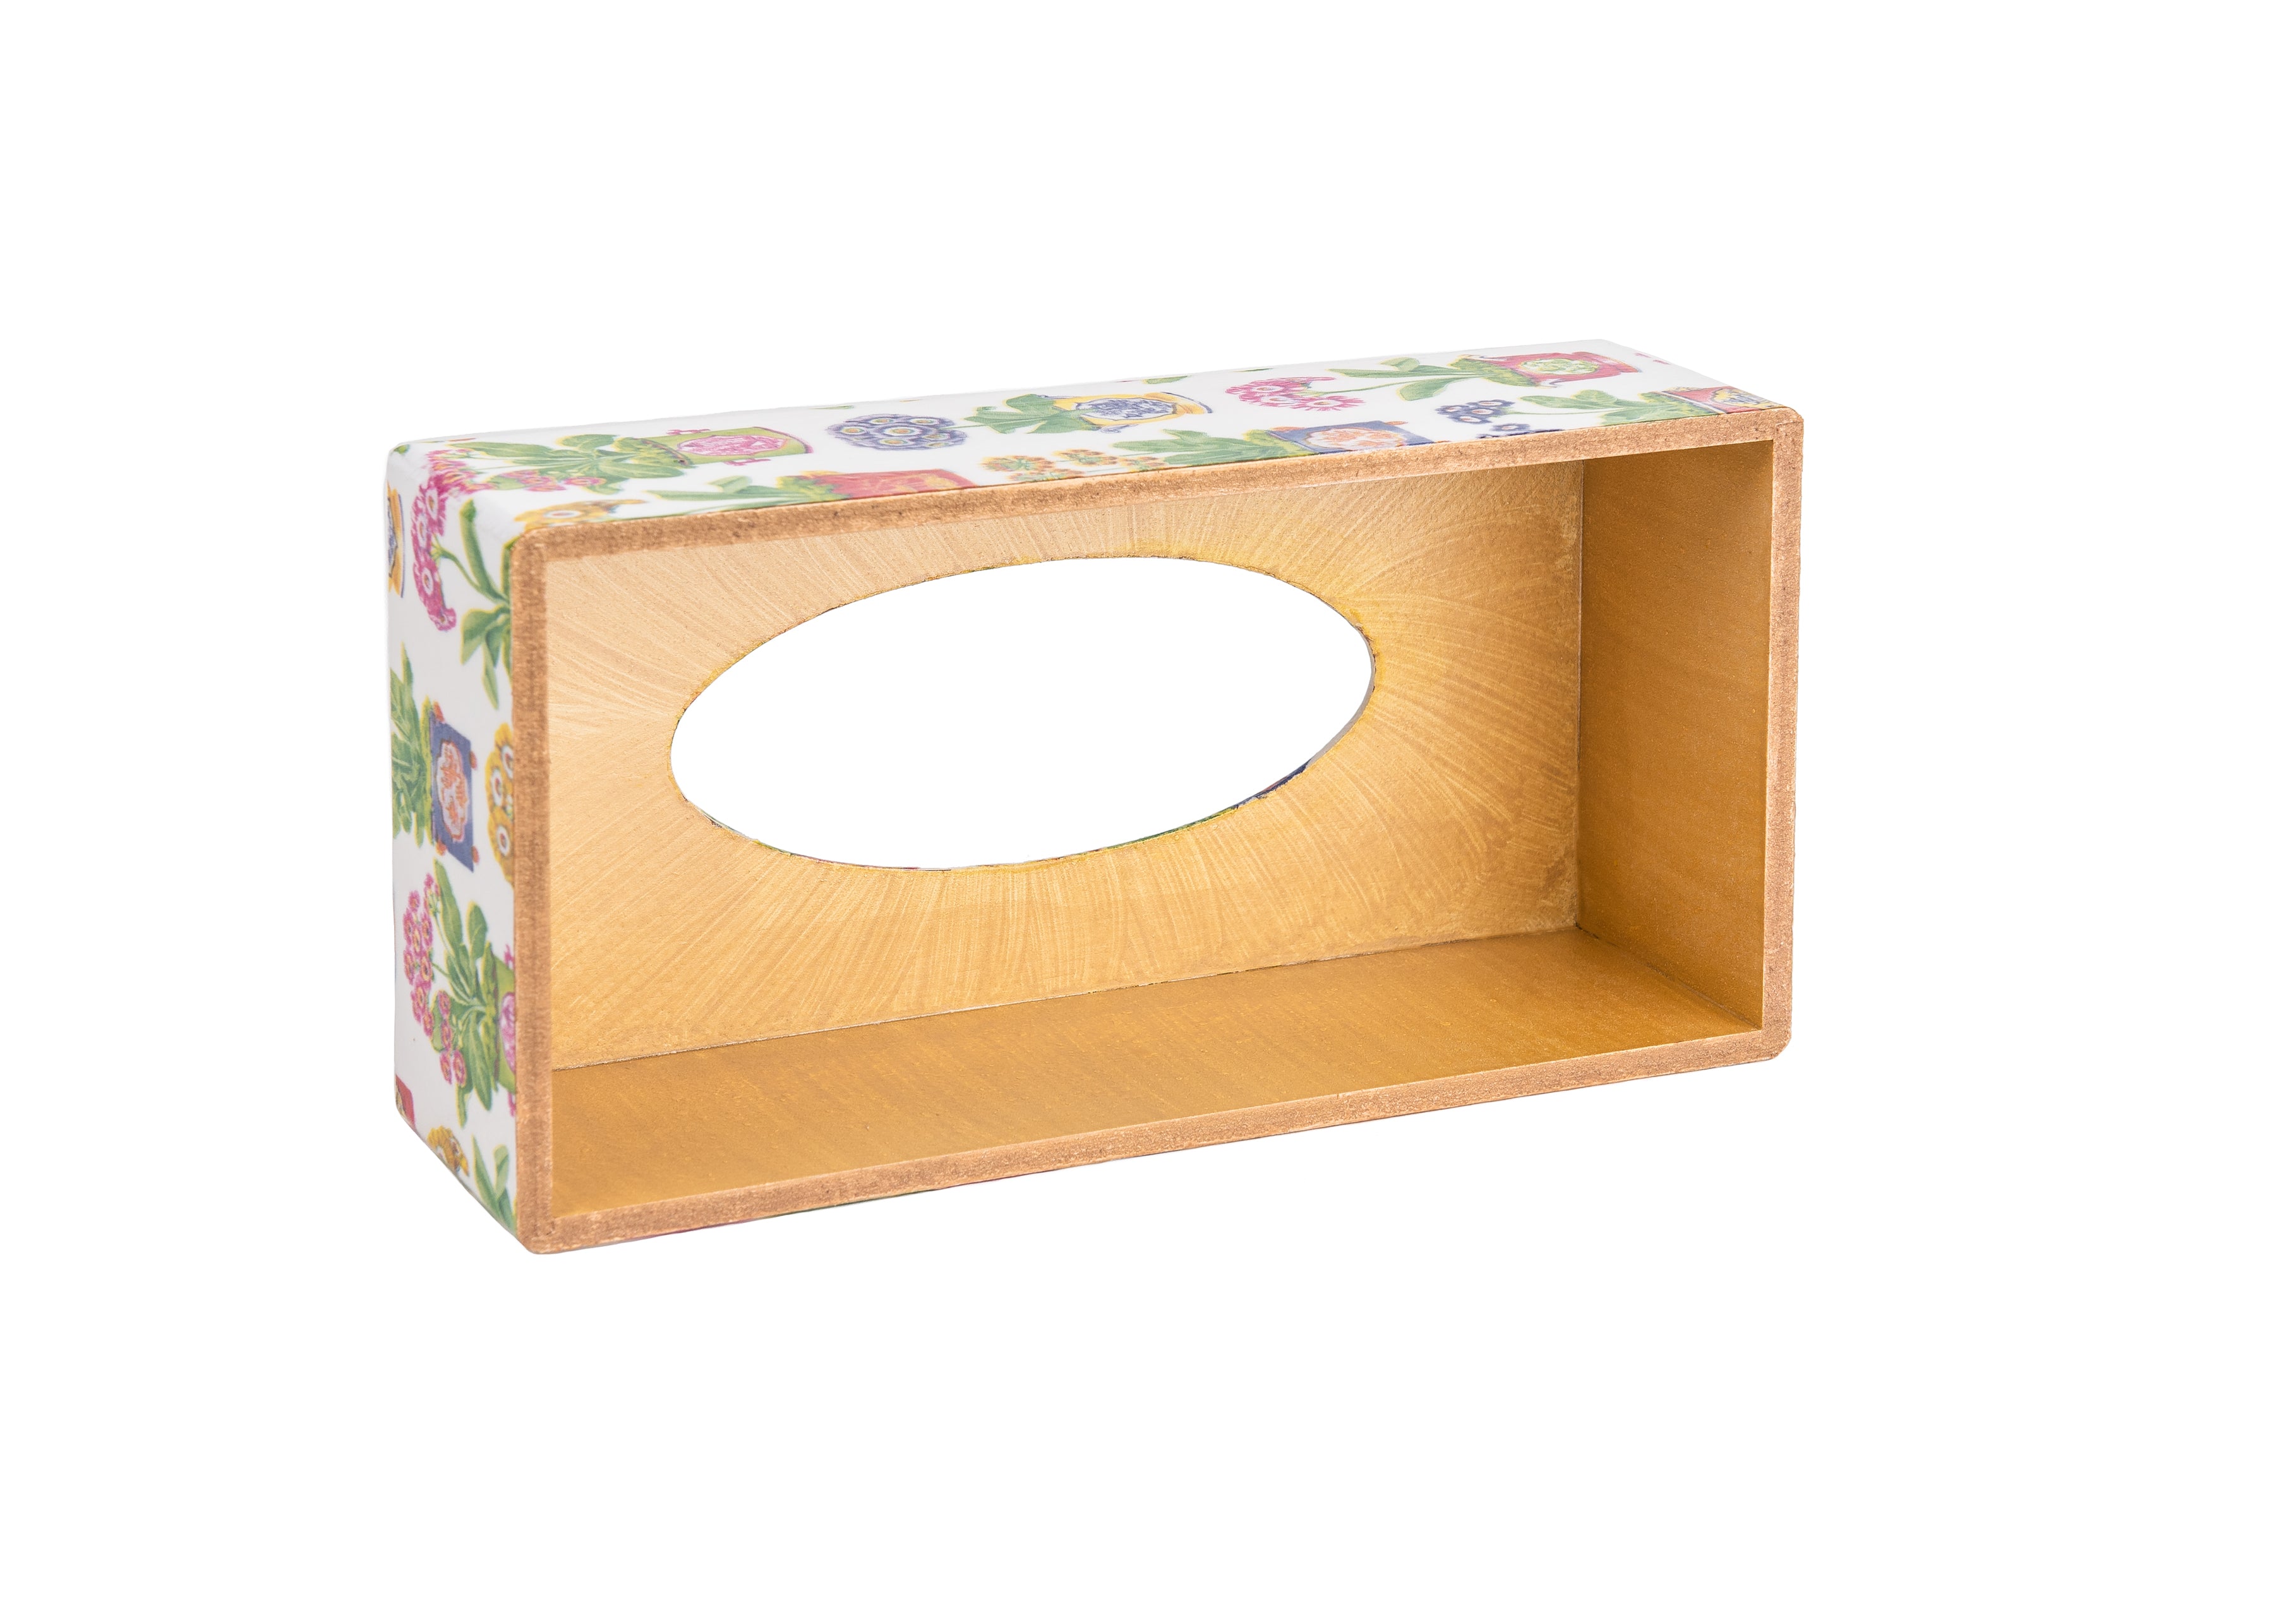 Poppy Rectangular Tissue Box Cover - Handmade